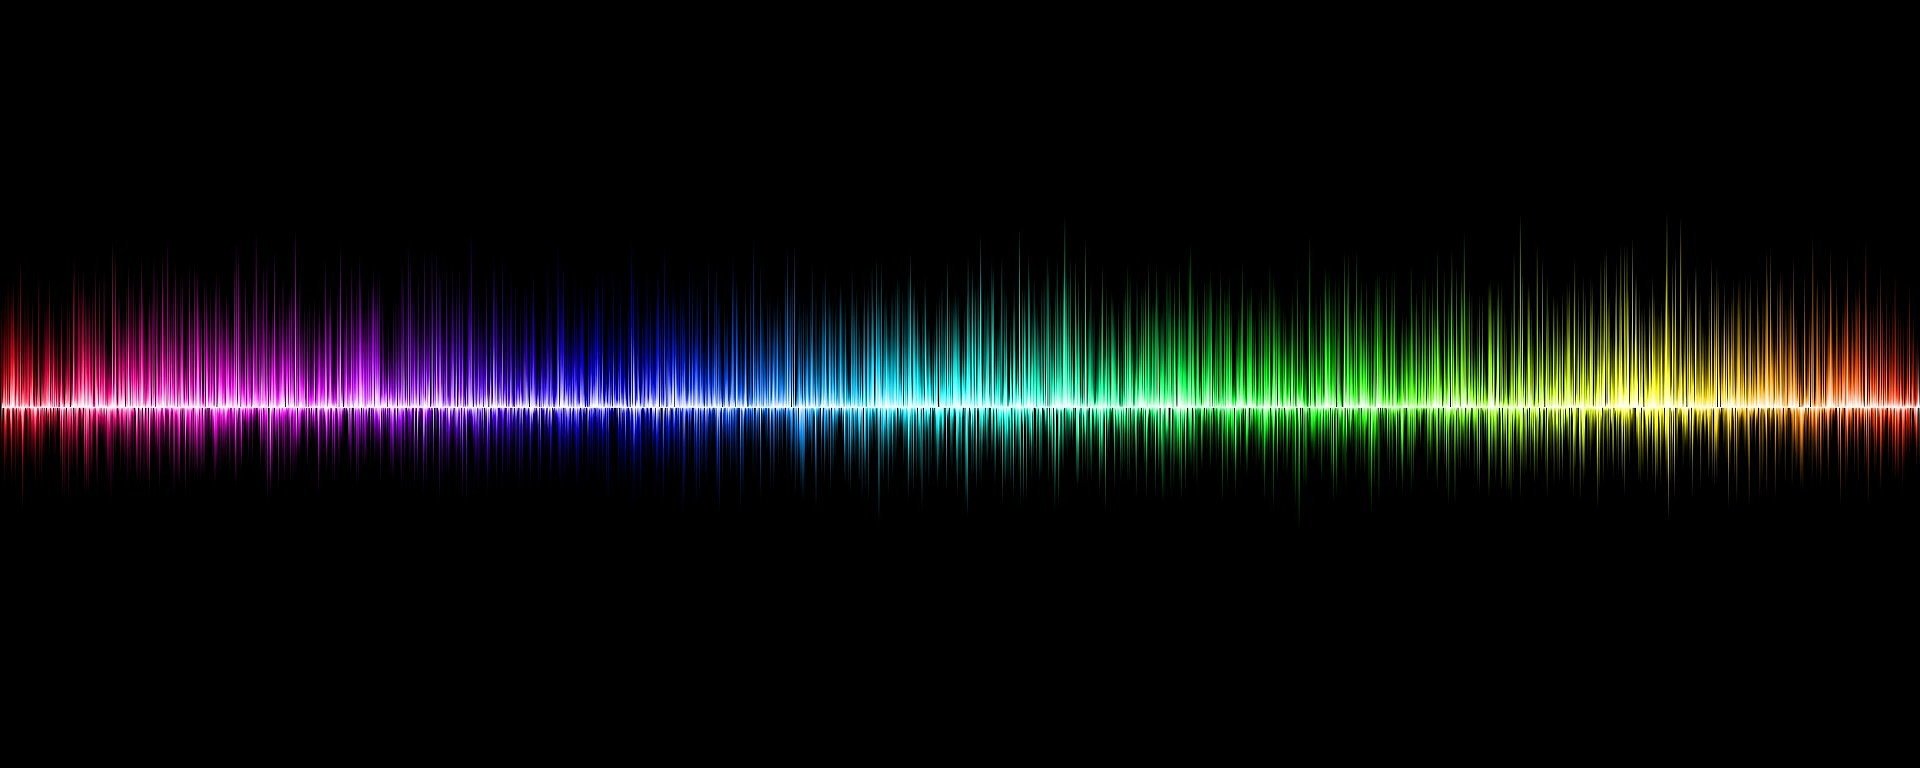 Pojawiły się nowe dowody na to, że dźwięk nadal przenosi masę